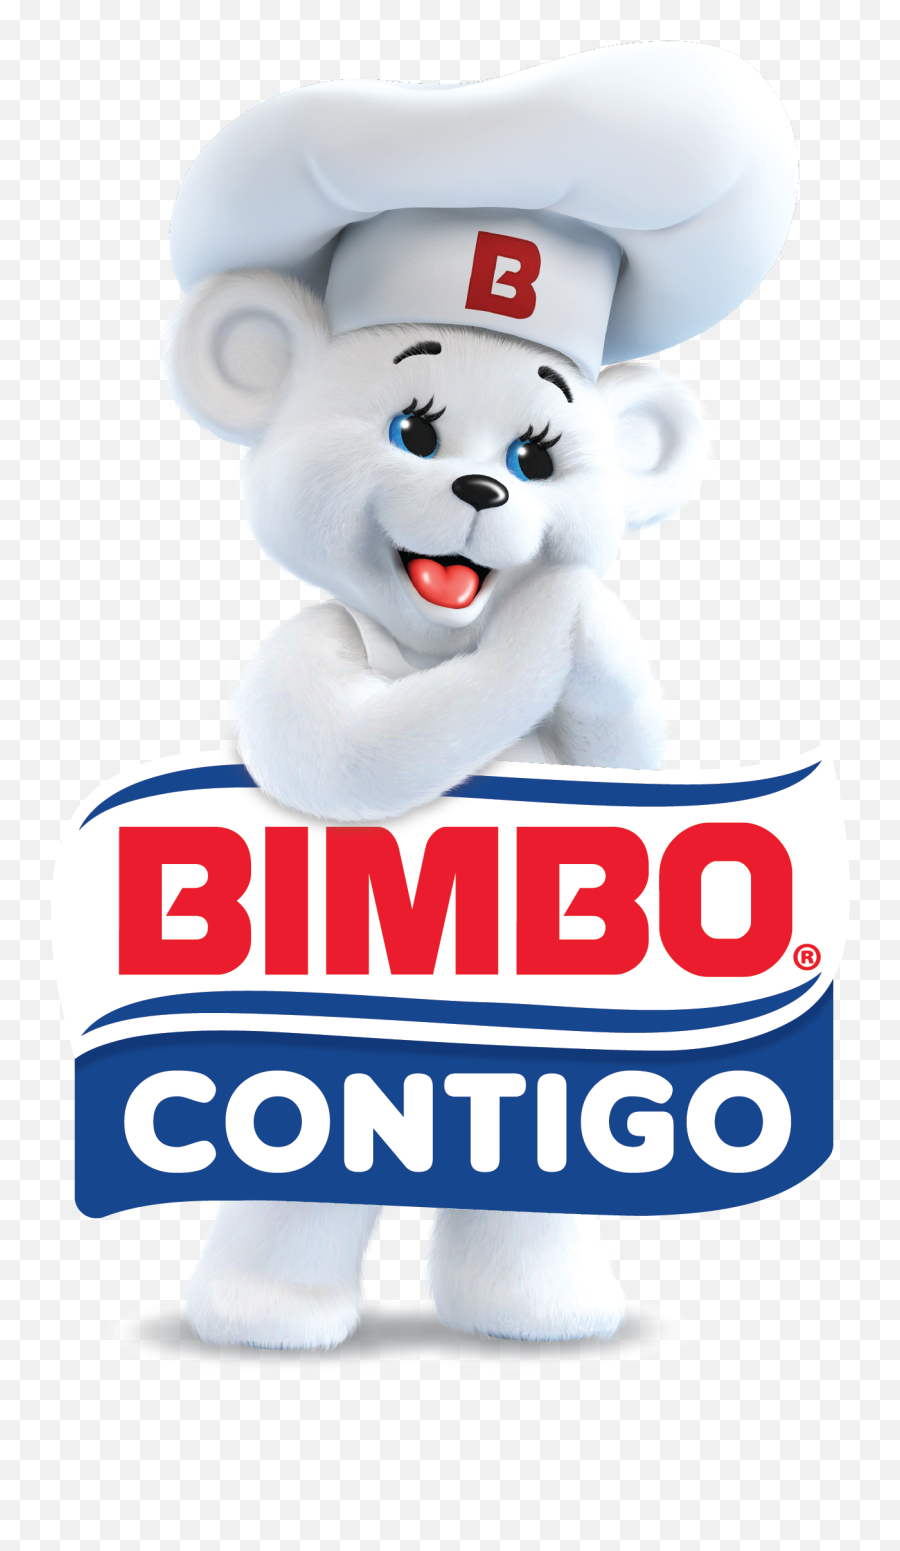 Contigo - Bimbo Conmigo Png,Bimbo Logo